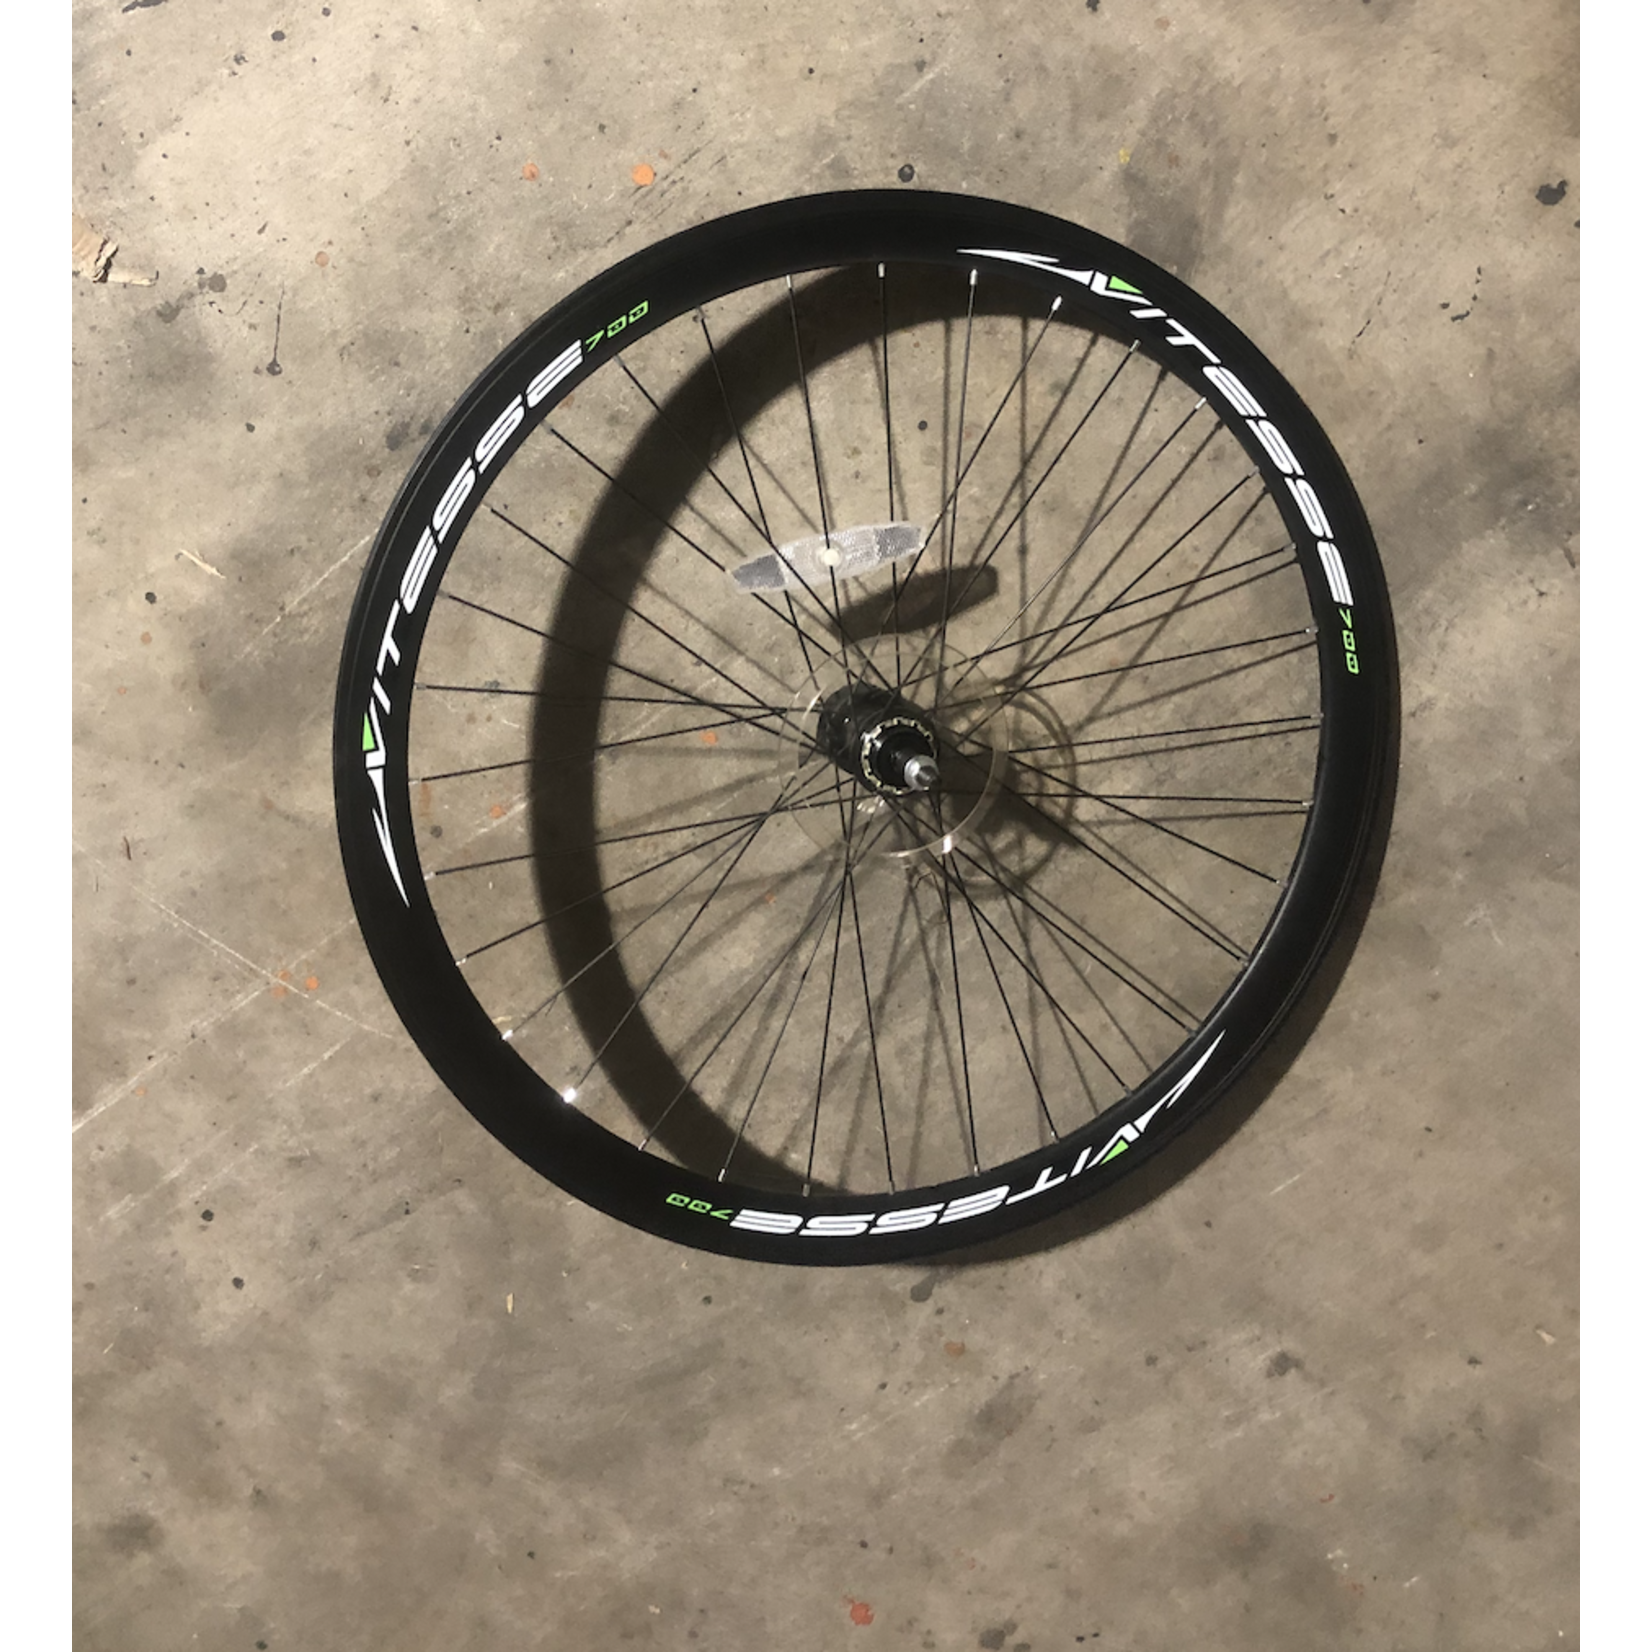 Vitesse 700c Rear Bicycle Wheel / Freewheel (Black/Green)